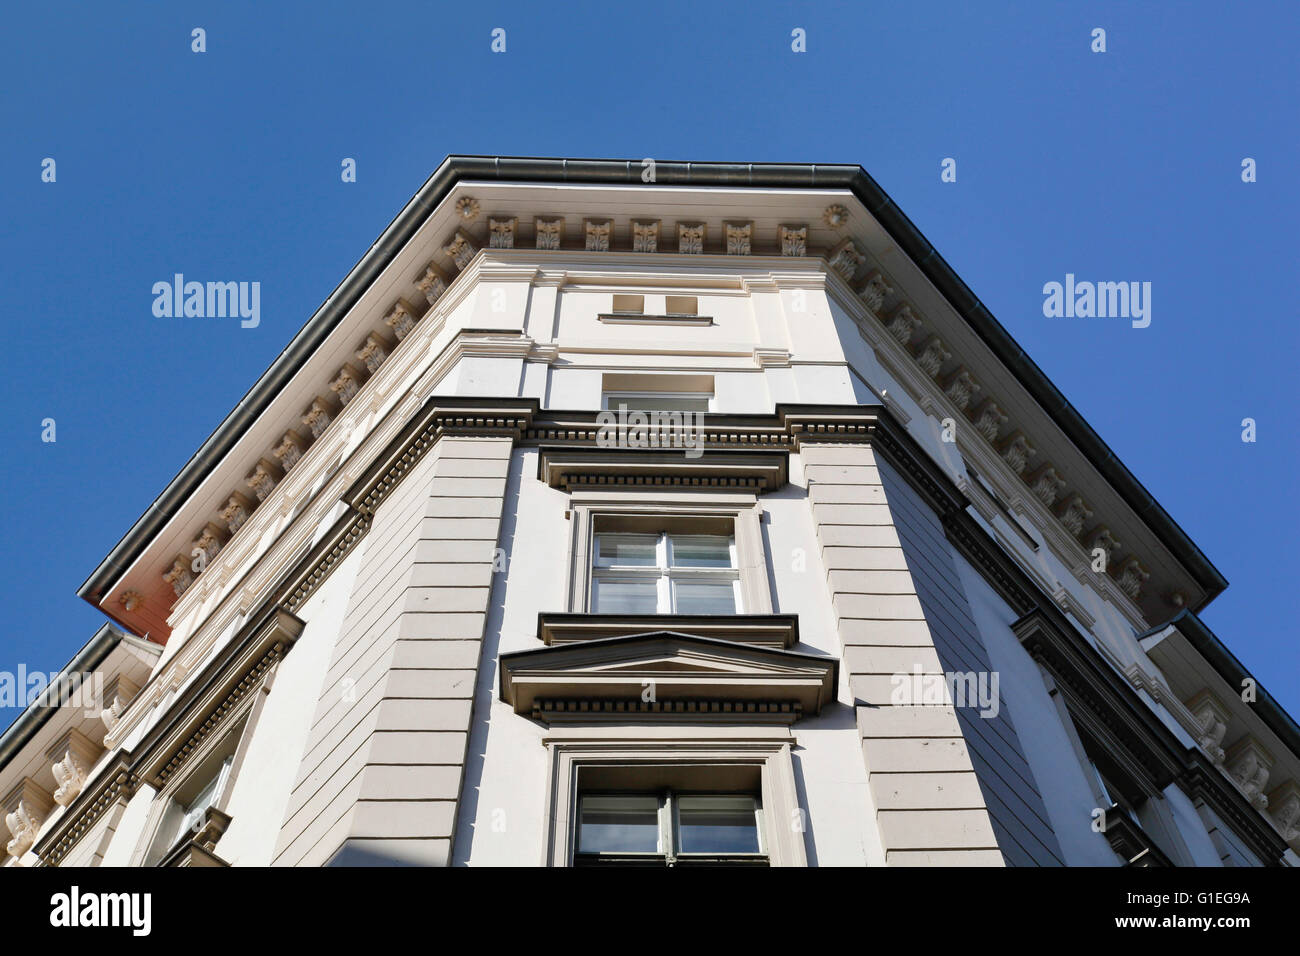 Buro, 53 Reichenberger Strasse. Vue oblique d'un mur extérieur de l'immeuble de bureaux et de windows. Banque D'Images